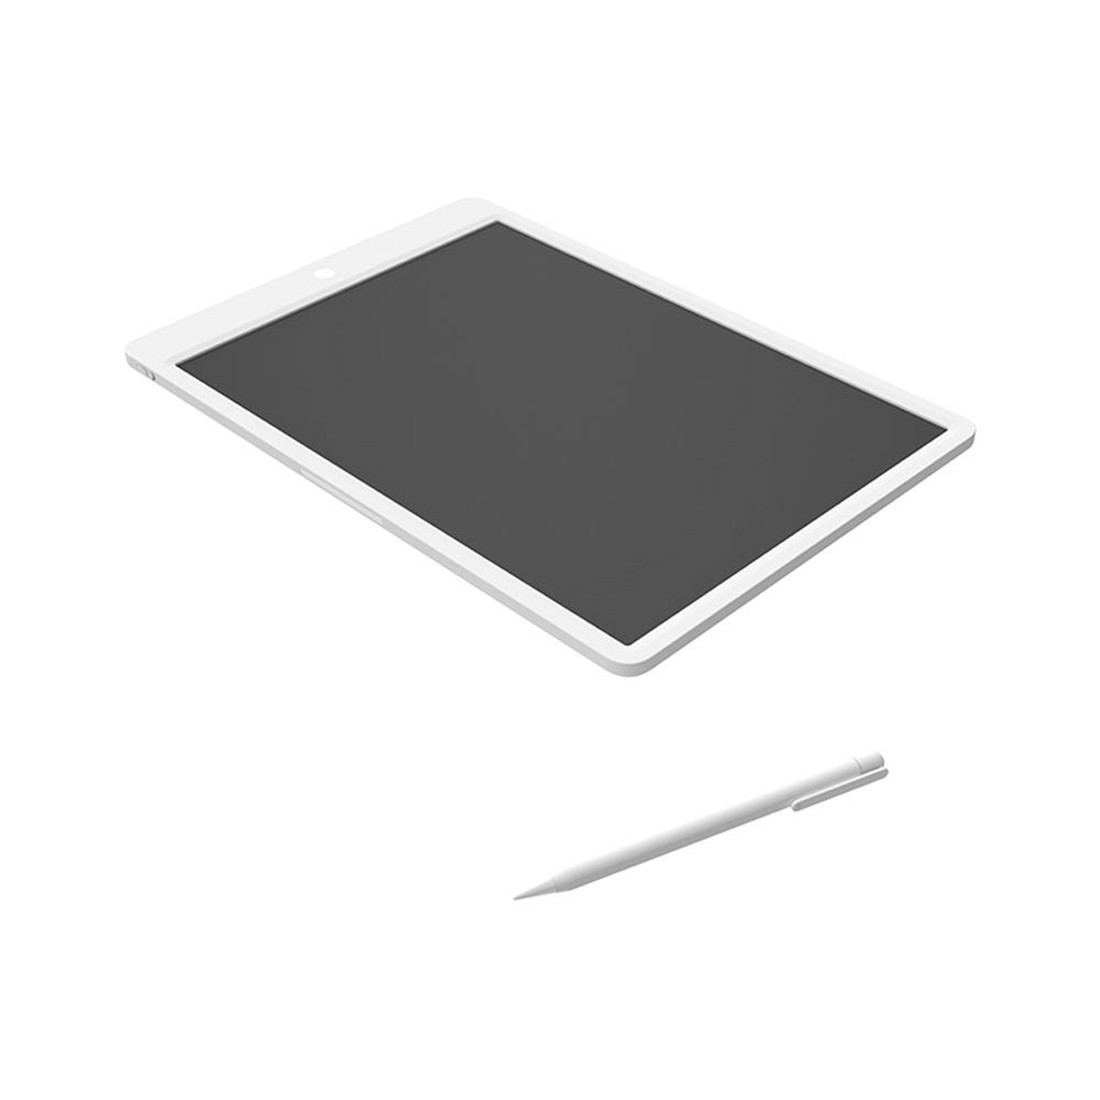 Графический планшет 13.5 дюйма Mijia LCD Small Blackboard от Xiaomi